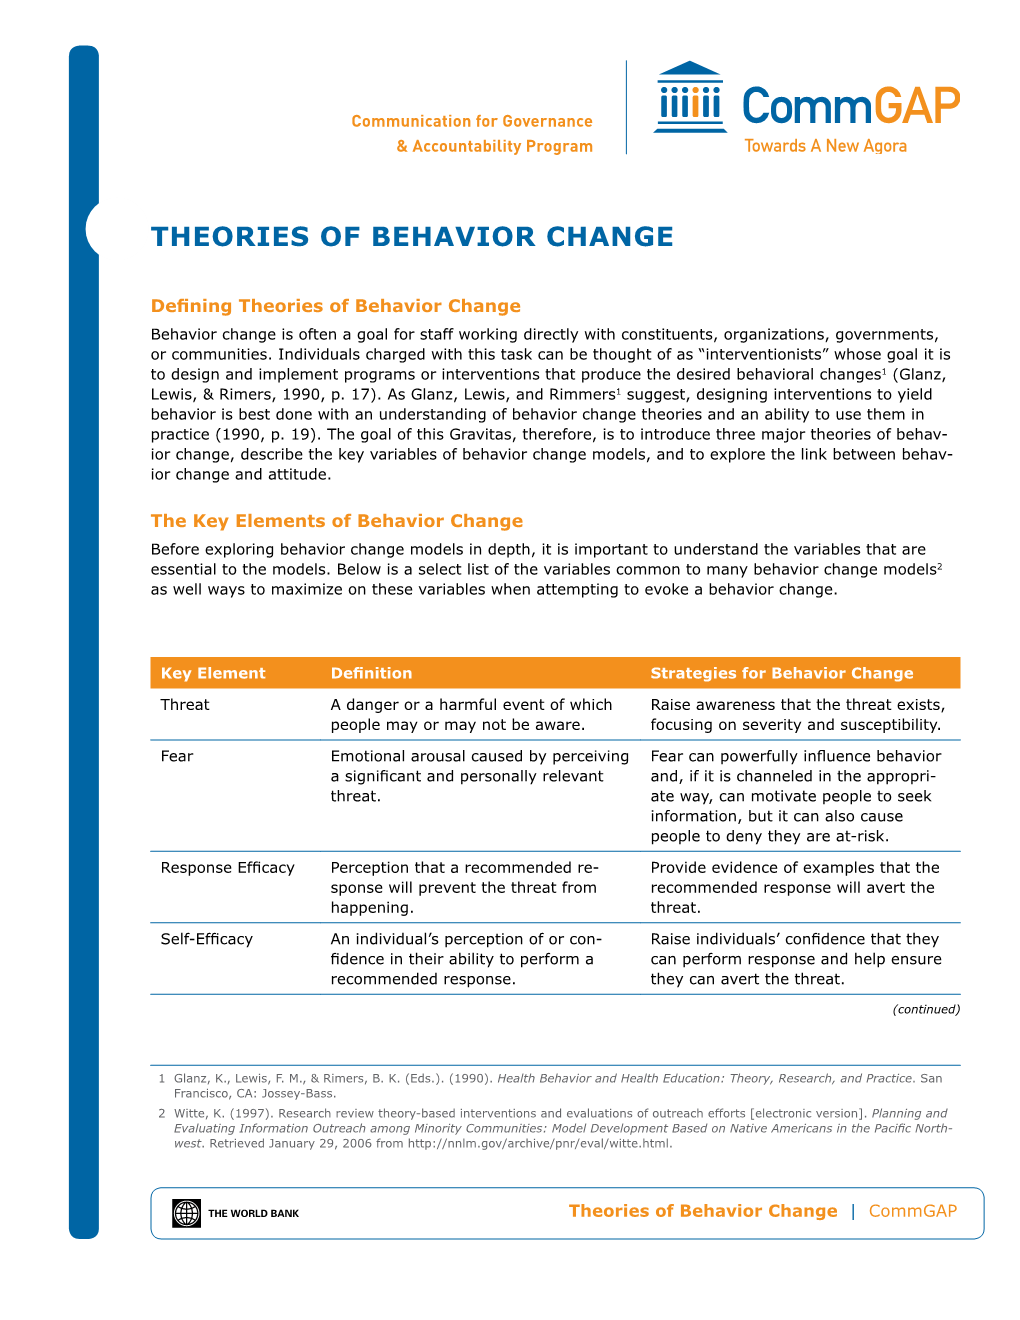 Theories of Behavior Change